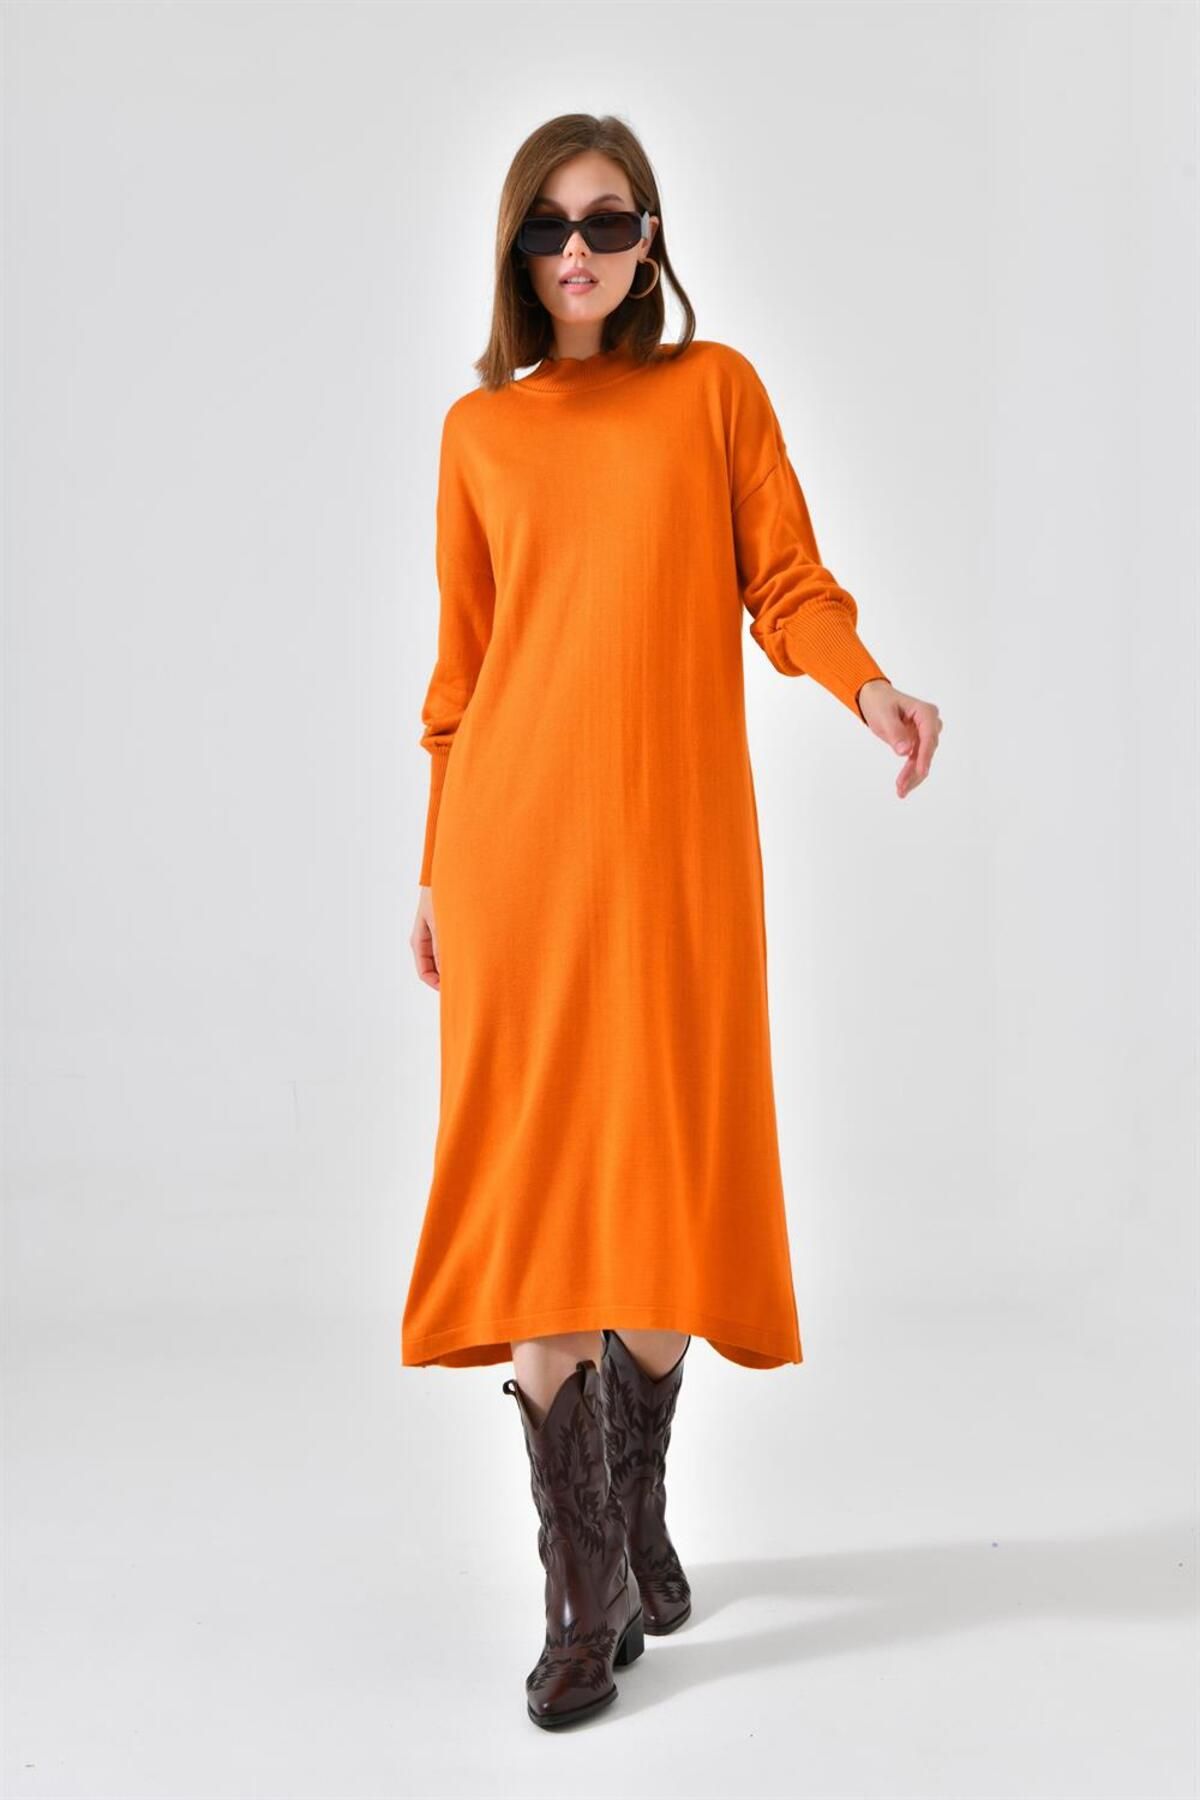 FTZ WOMEN Kadın Düz Basic Tunik Orange 20678